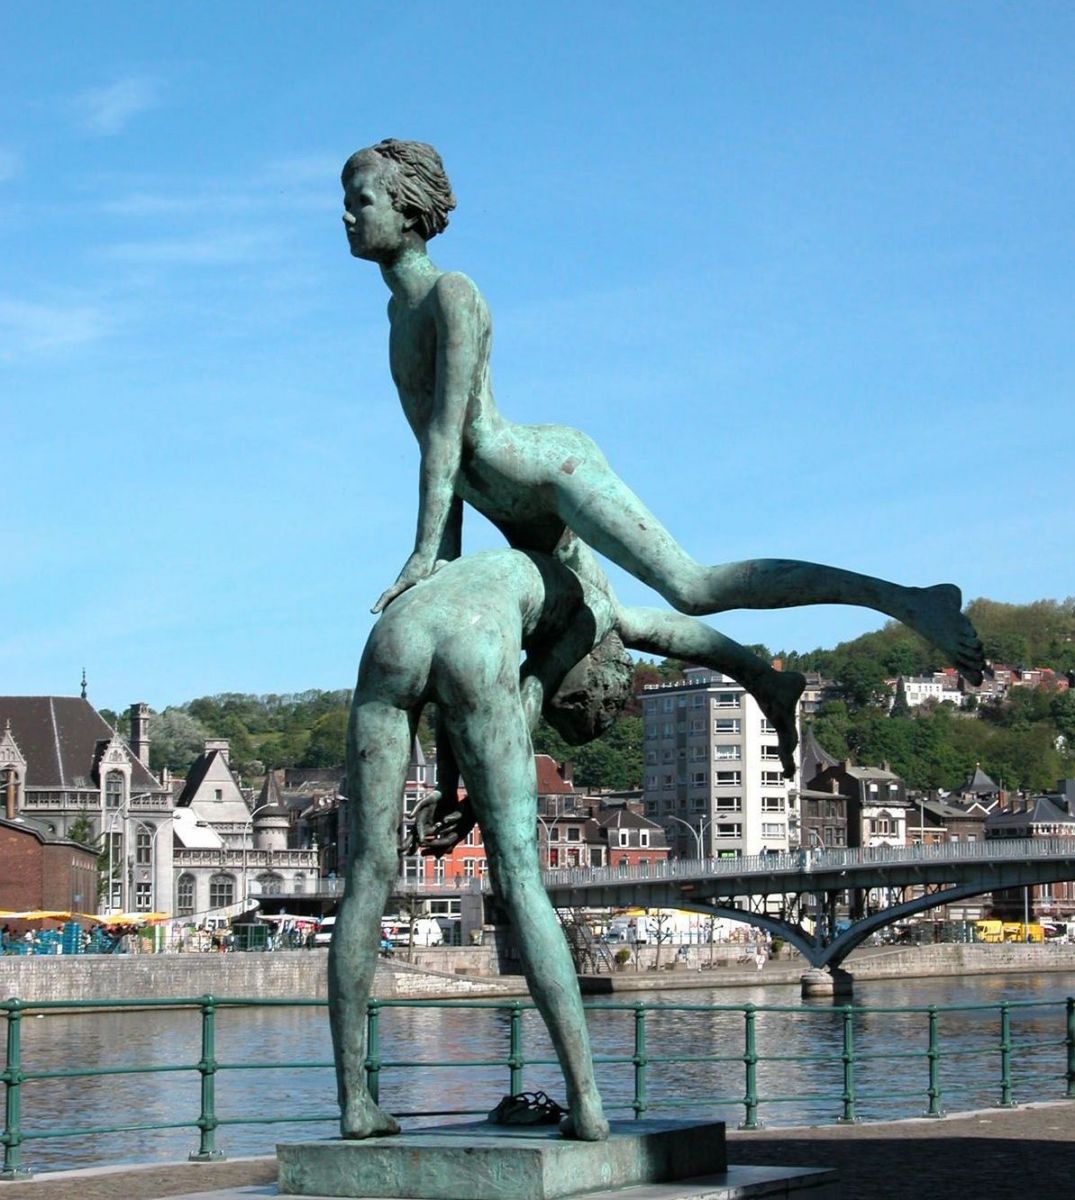 A statue in Liége